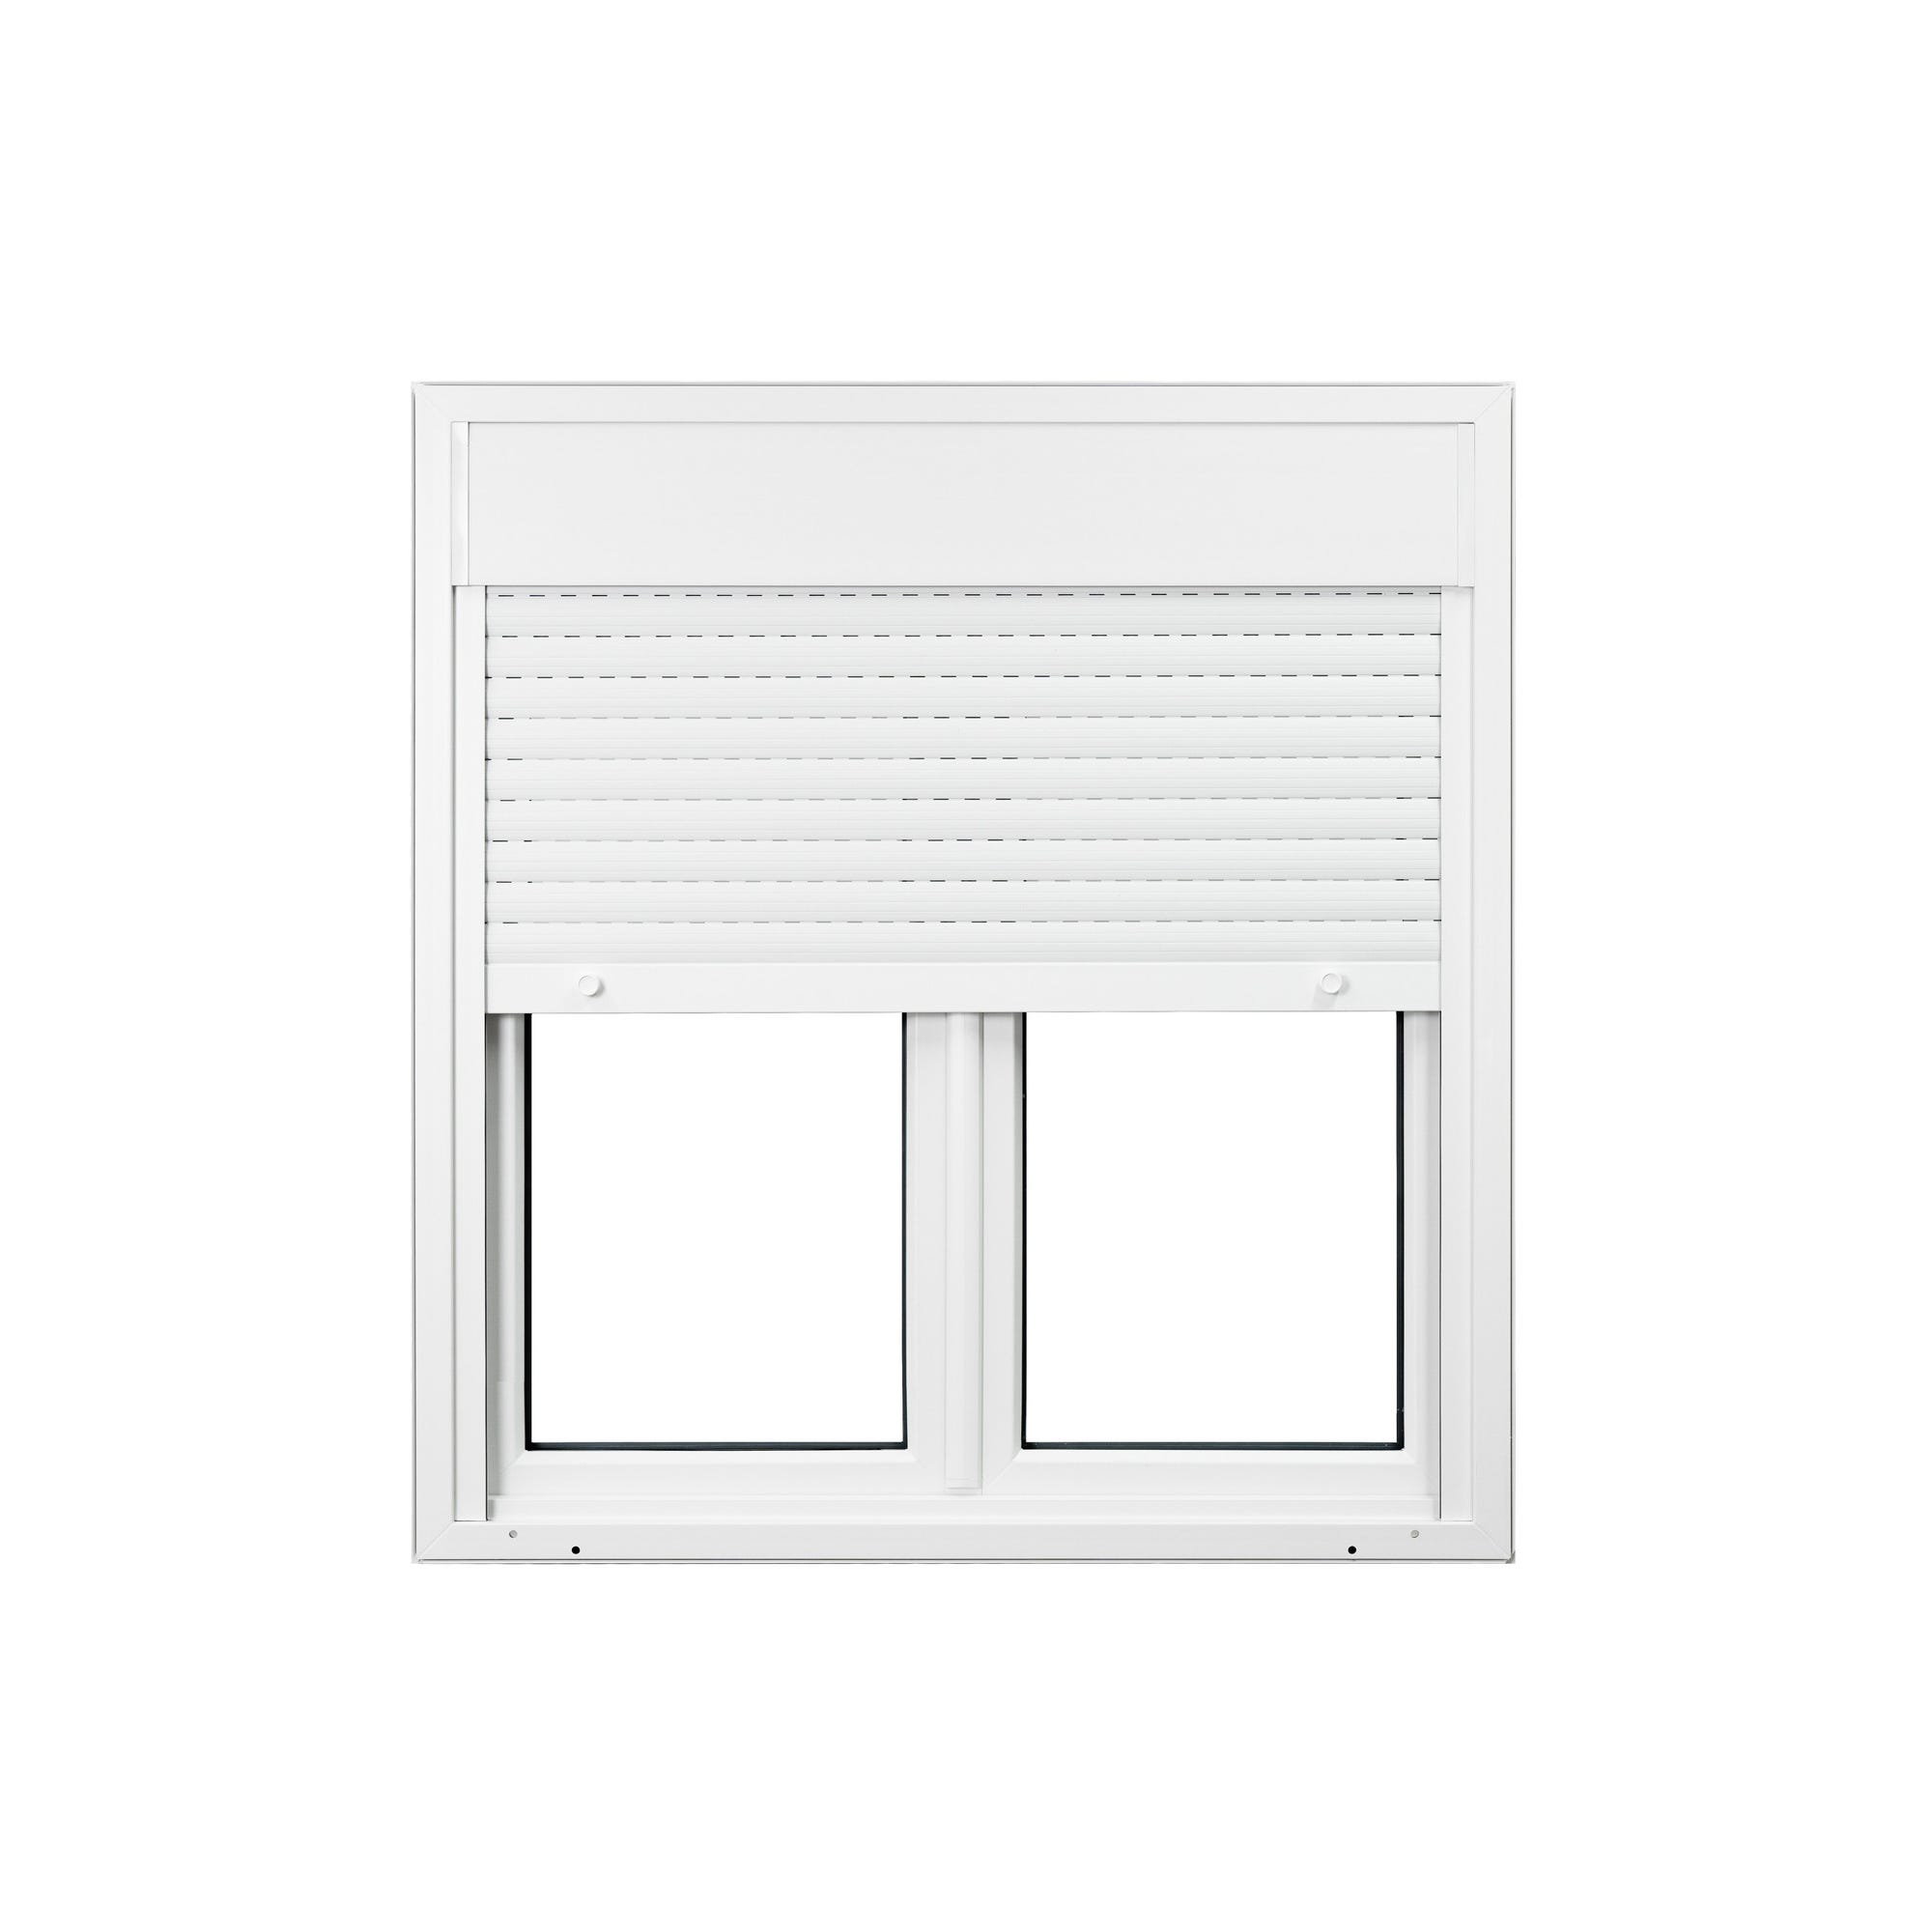 Fenêtre PVC 2 vantaux avec volet roulant intégré monobloc H.105 x l.120 cm - GROSFILLEX 2